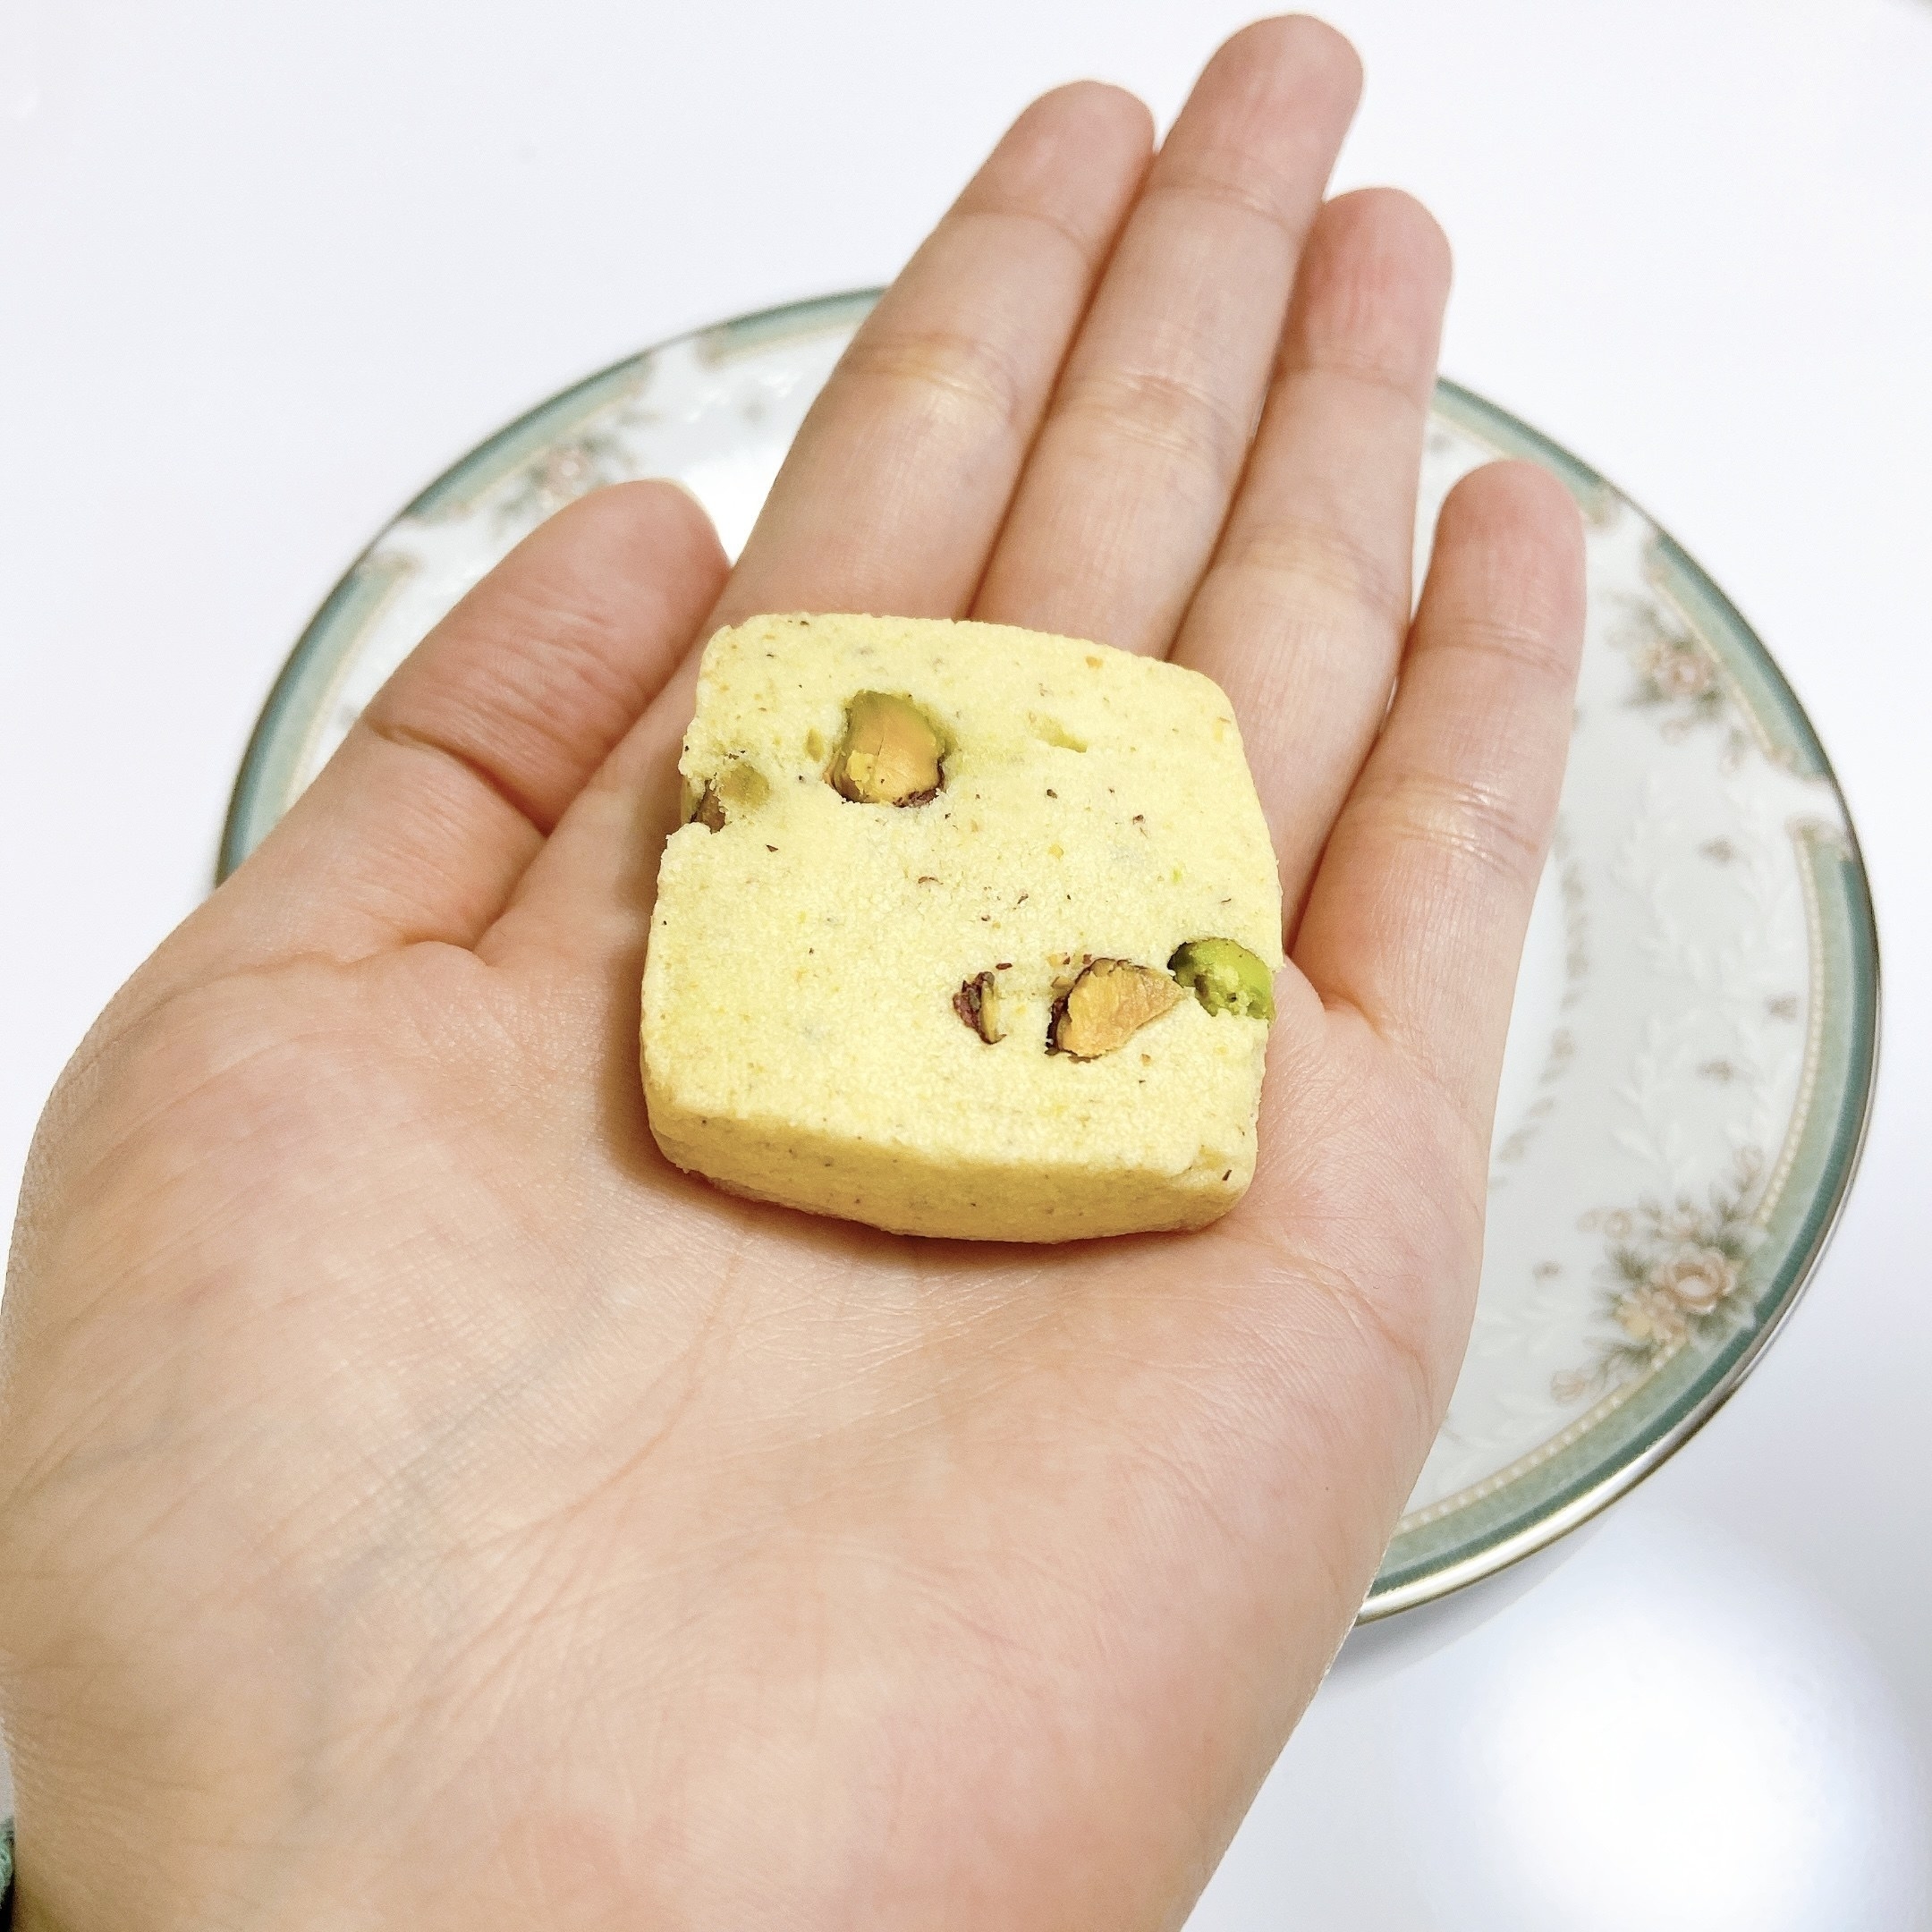 セブン-イレブンのオススメのお菓子「ごろごろナッツのピスタチオクッキー」